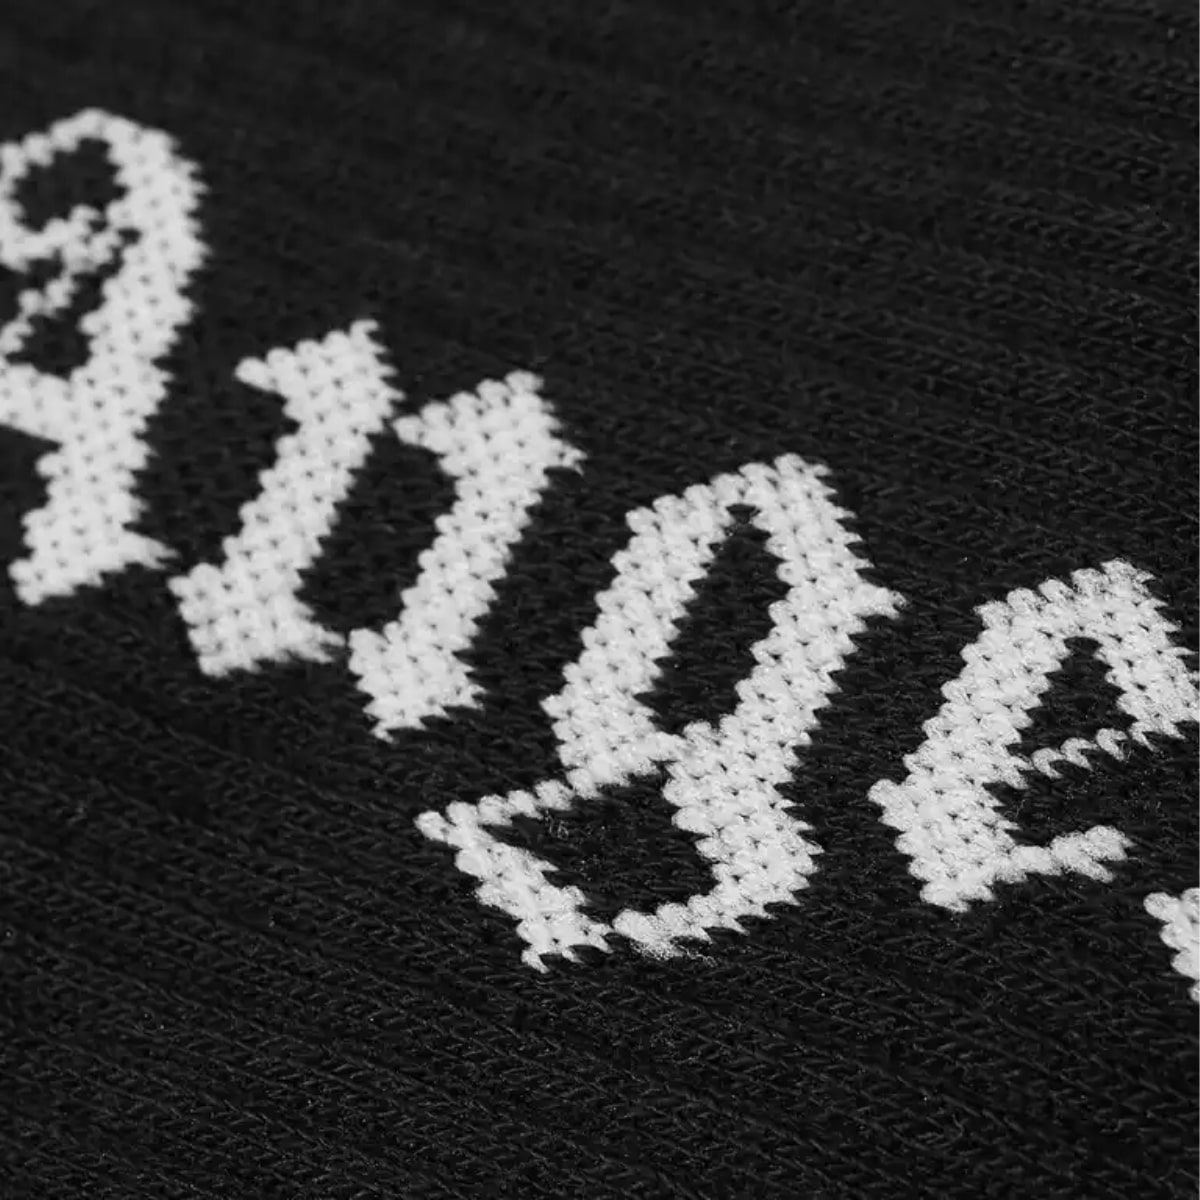 Printed Logo Socks In Black